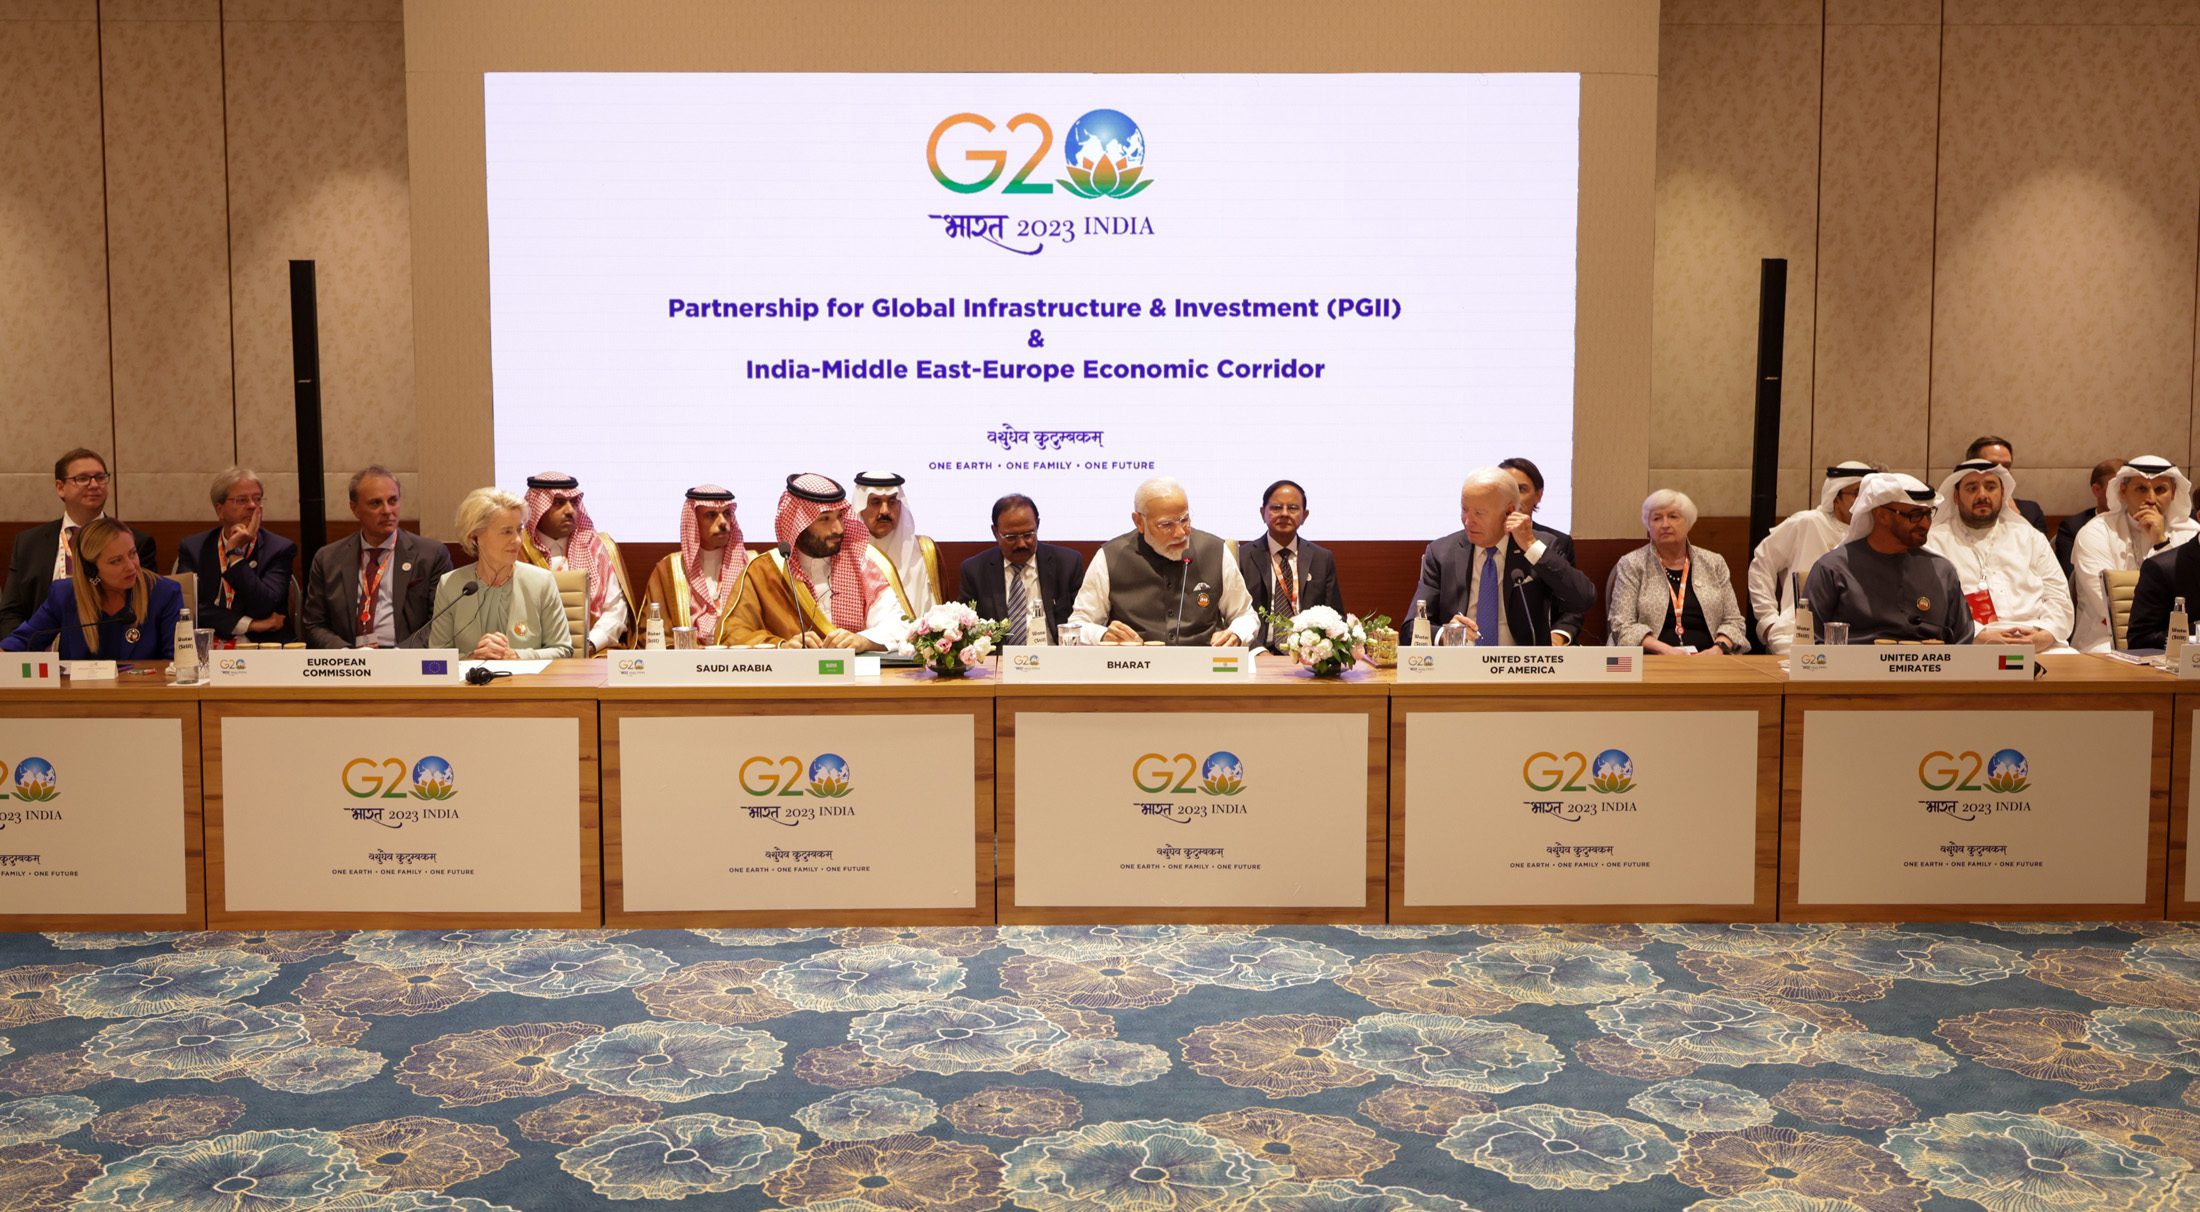 G20 in India: cos’è successo al forum delle economie più sviluppate